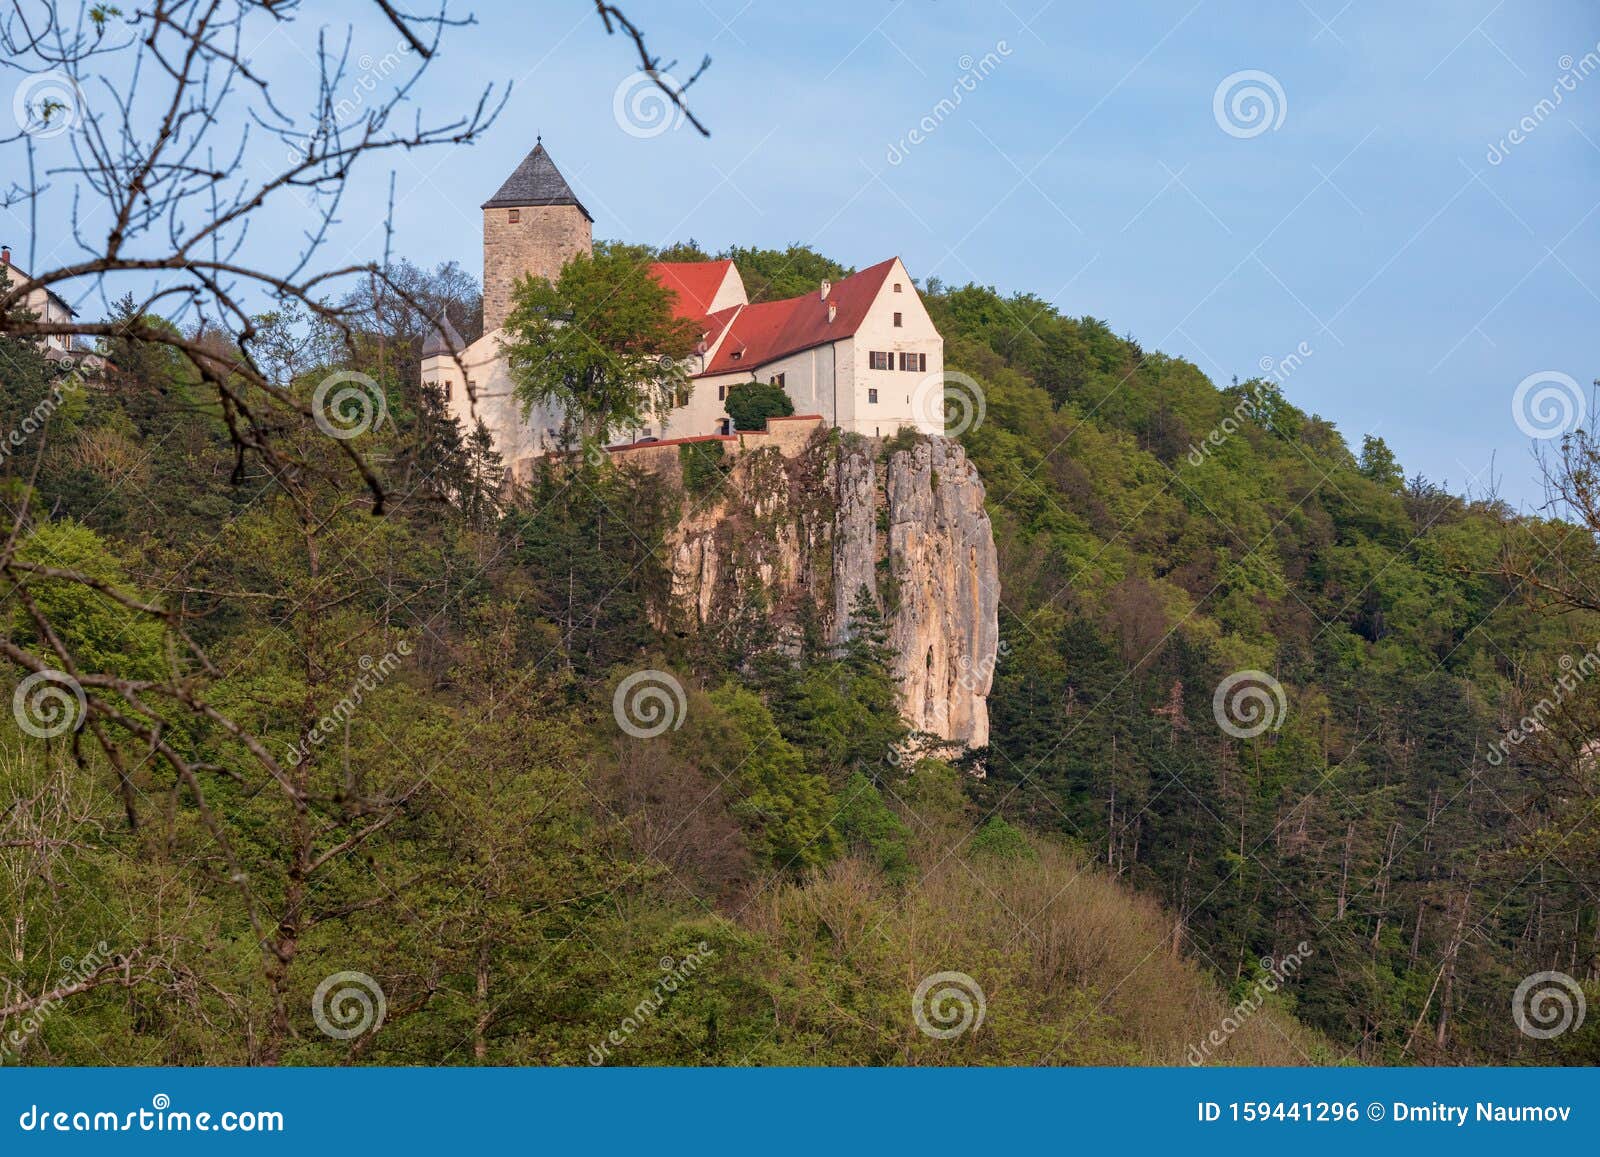 på vegne af regering Spanien Burg Prunn Castle at Altmuhl Valley Nature Park in Bavaria Germany Stock  Photo - Image of altmuhl, naturpark: 159441296